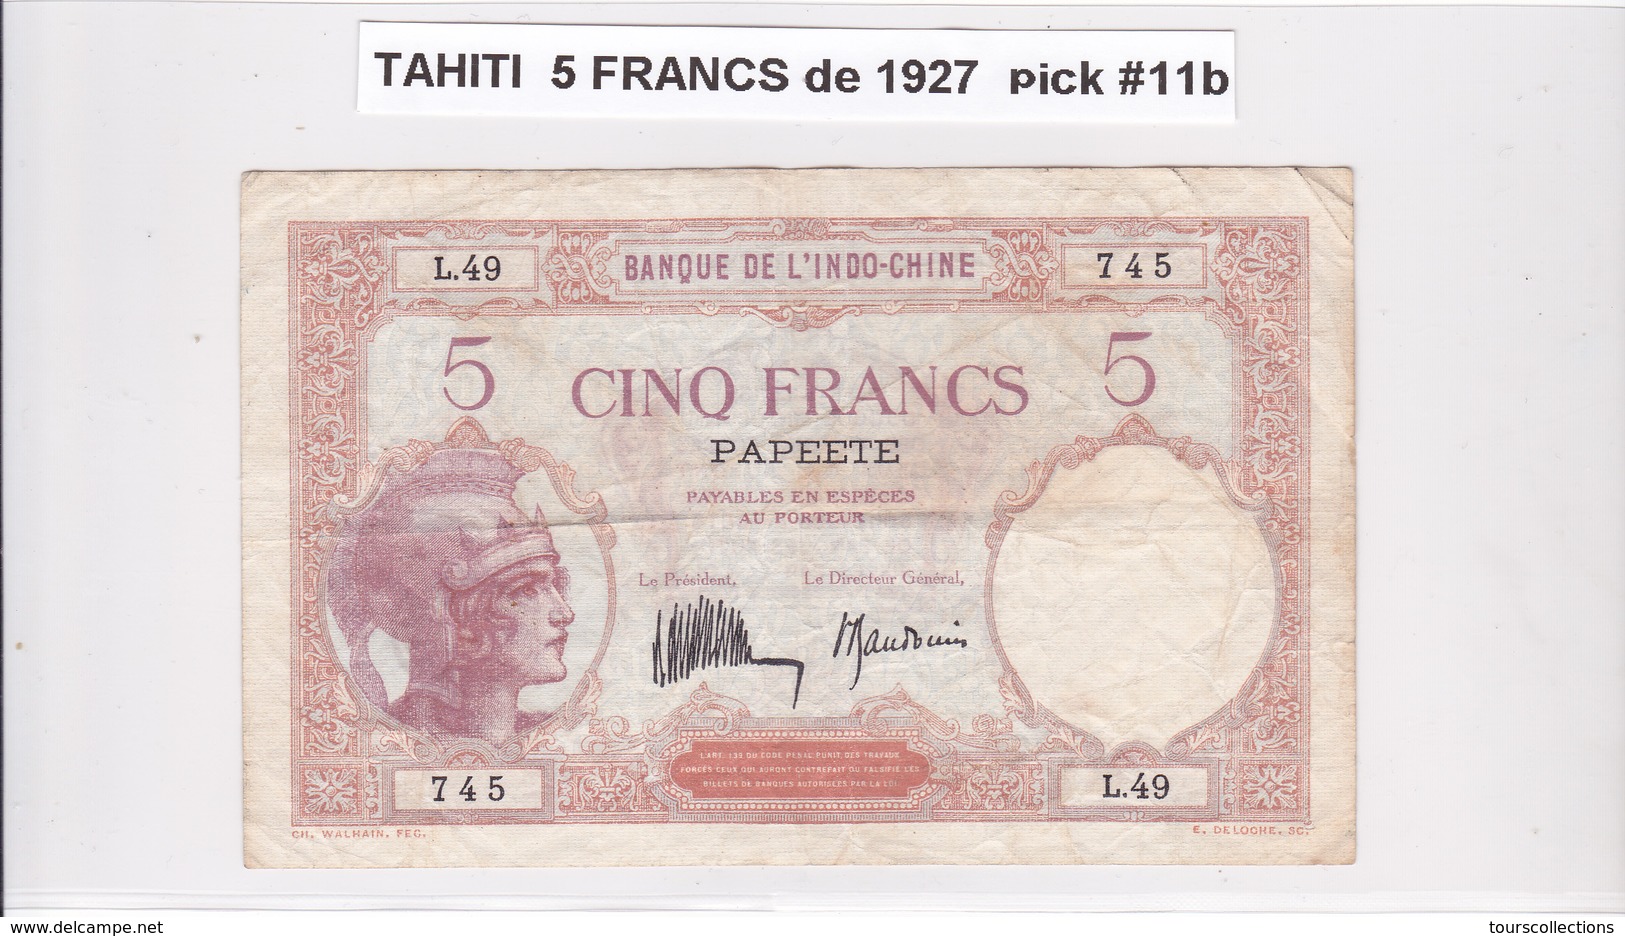 BILLET 5 FRANCS De 1927 De TAHITI Papeete L.49 - Banque De L'indochine Surcharge Polynésie Francaise @ Pick 11b - Papeete (Polynésie Française 1914-1985)